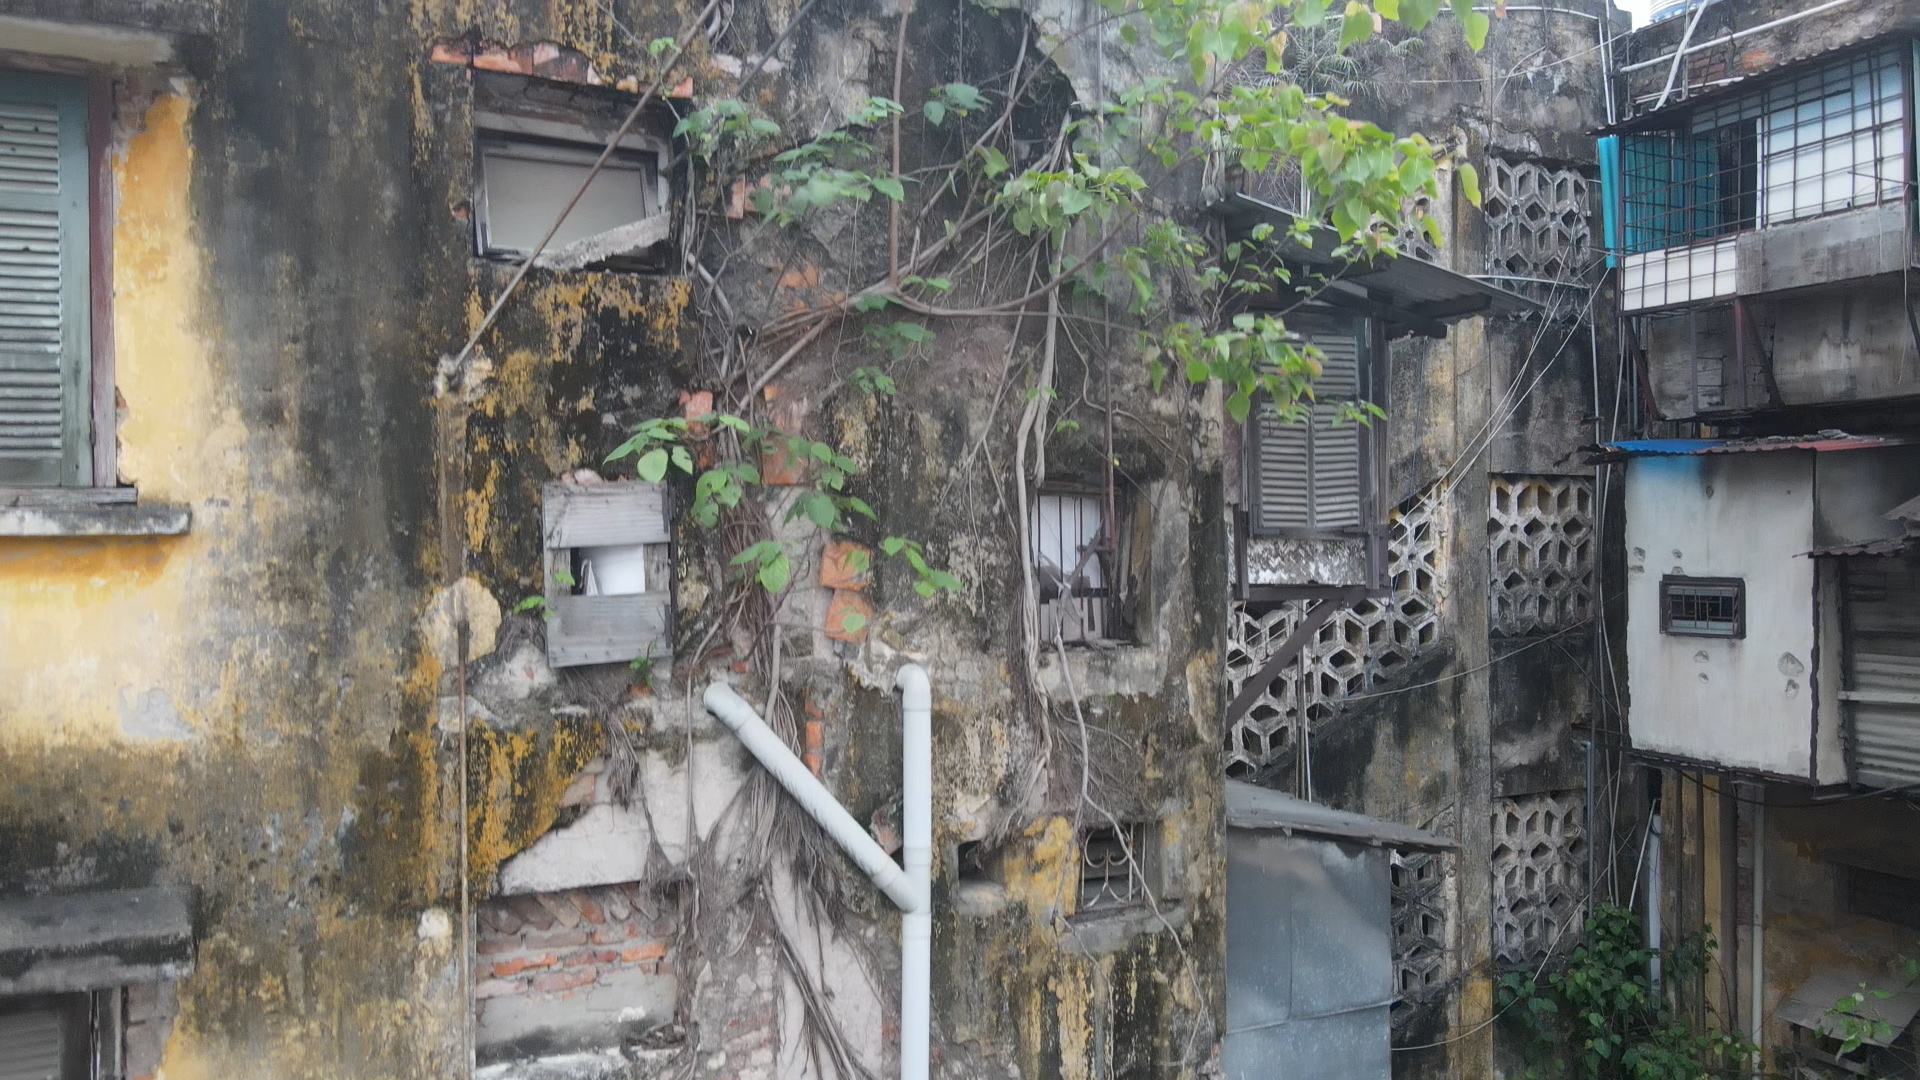 Bên trong các căn nhà tập thể đổ nát nguy hiểm bậc nhất ở Hà Nội - Ảnh 4.